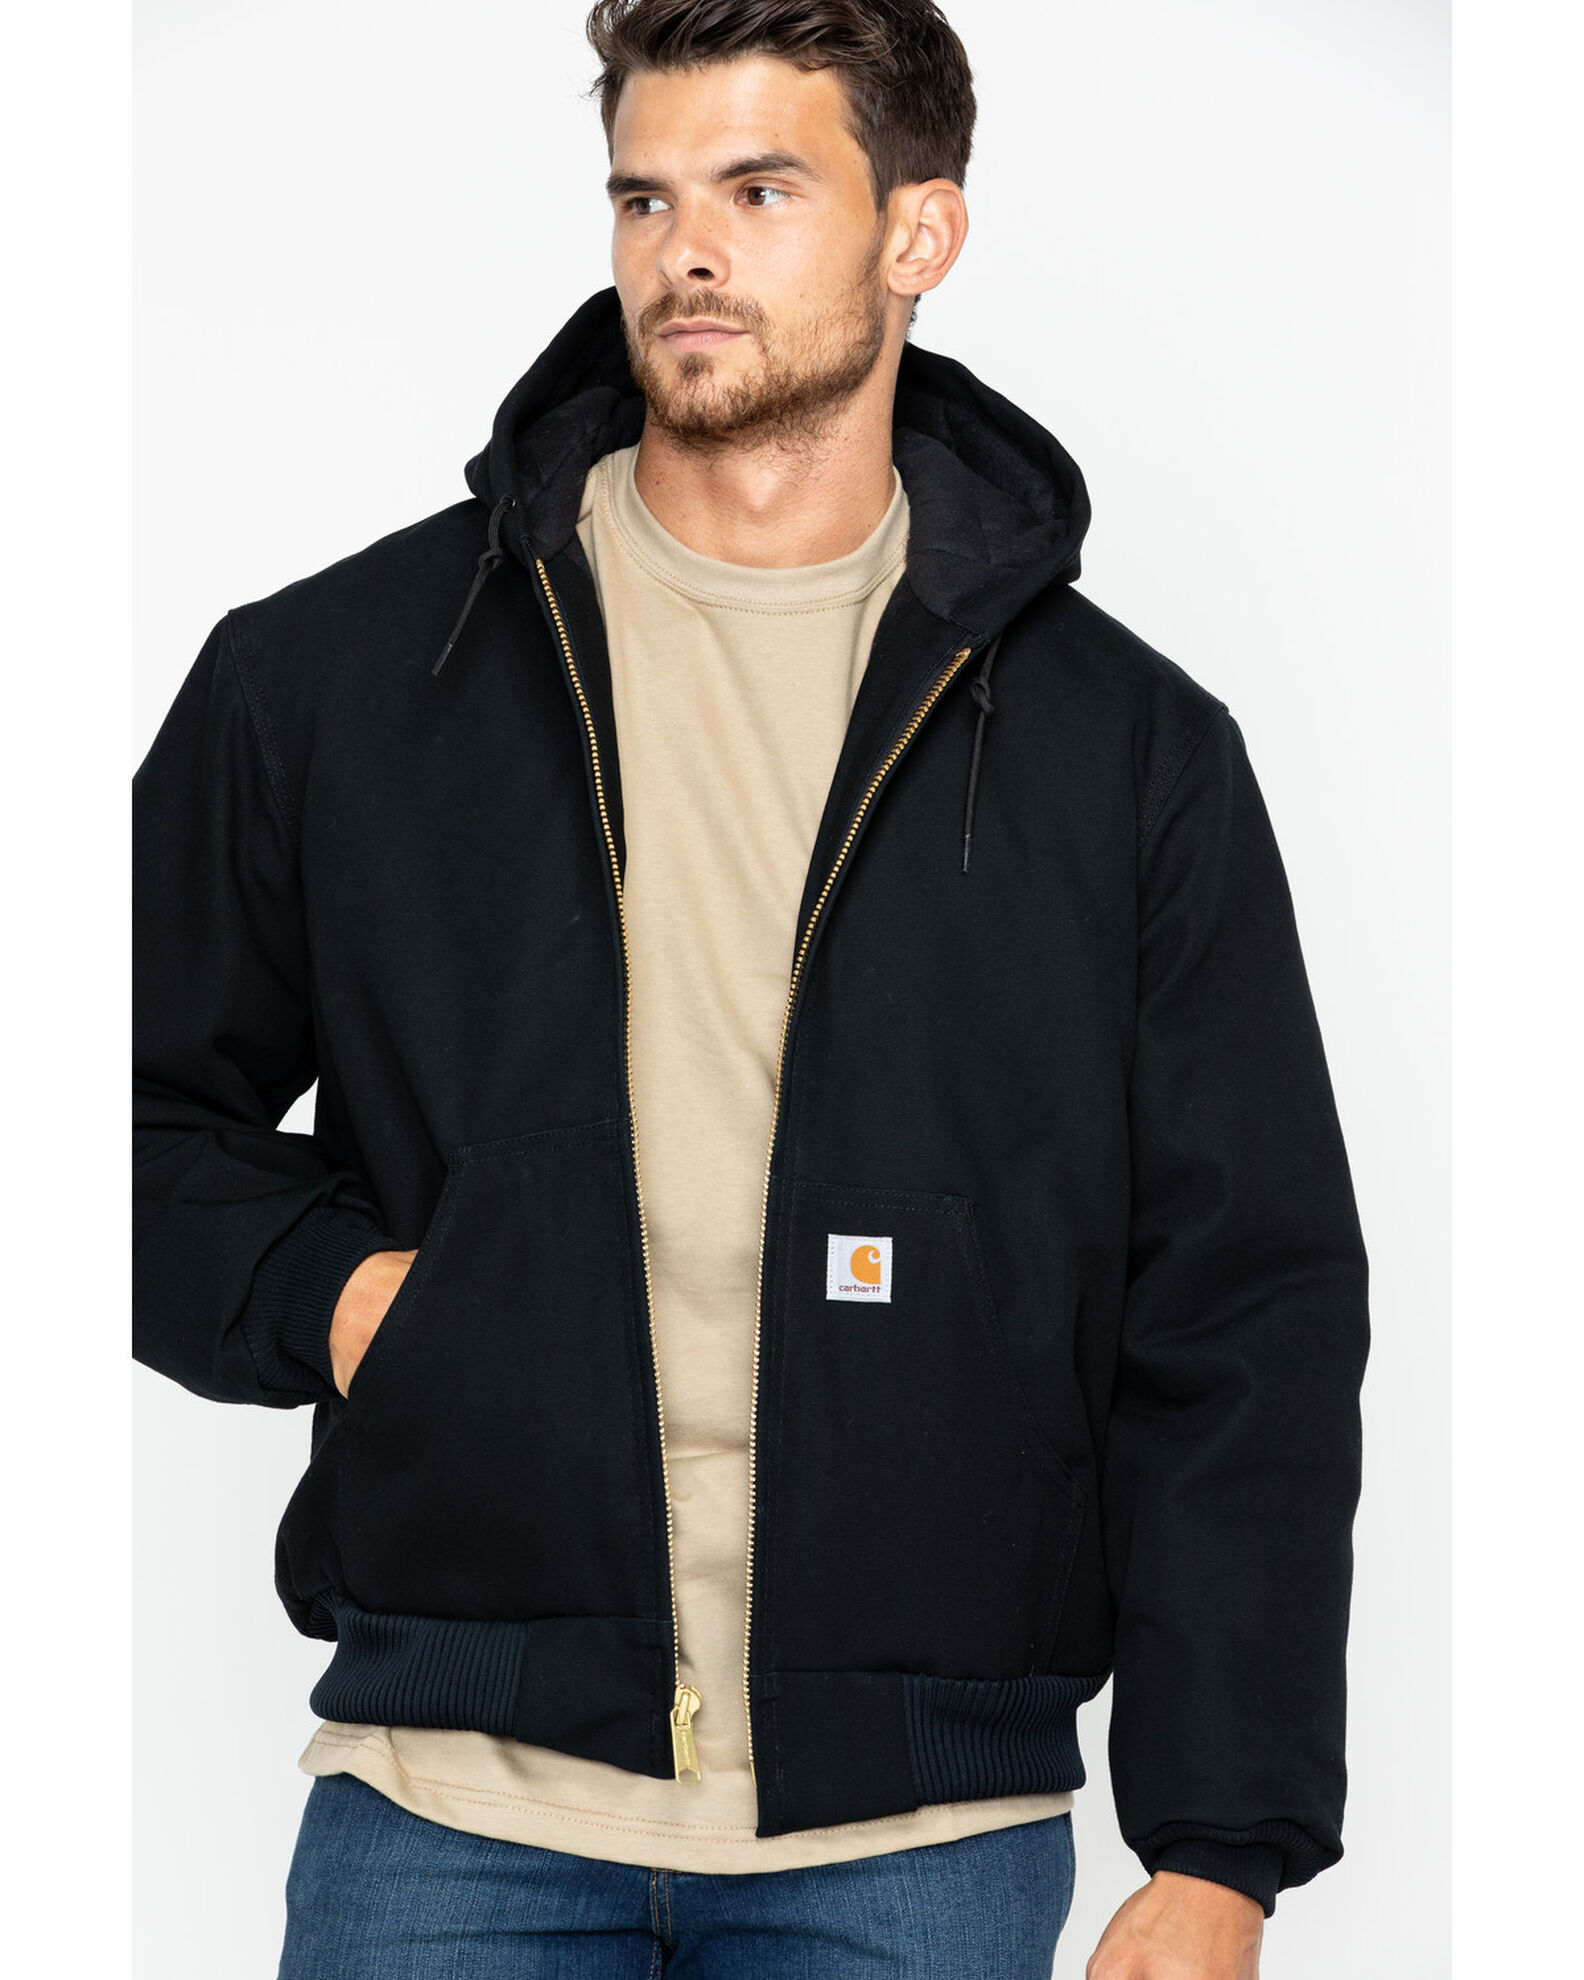 Product Name: Carhartt Men's Duck Active Zip Front Work Jacket